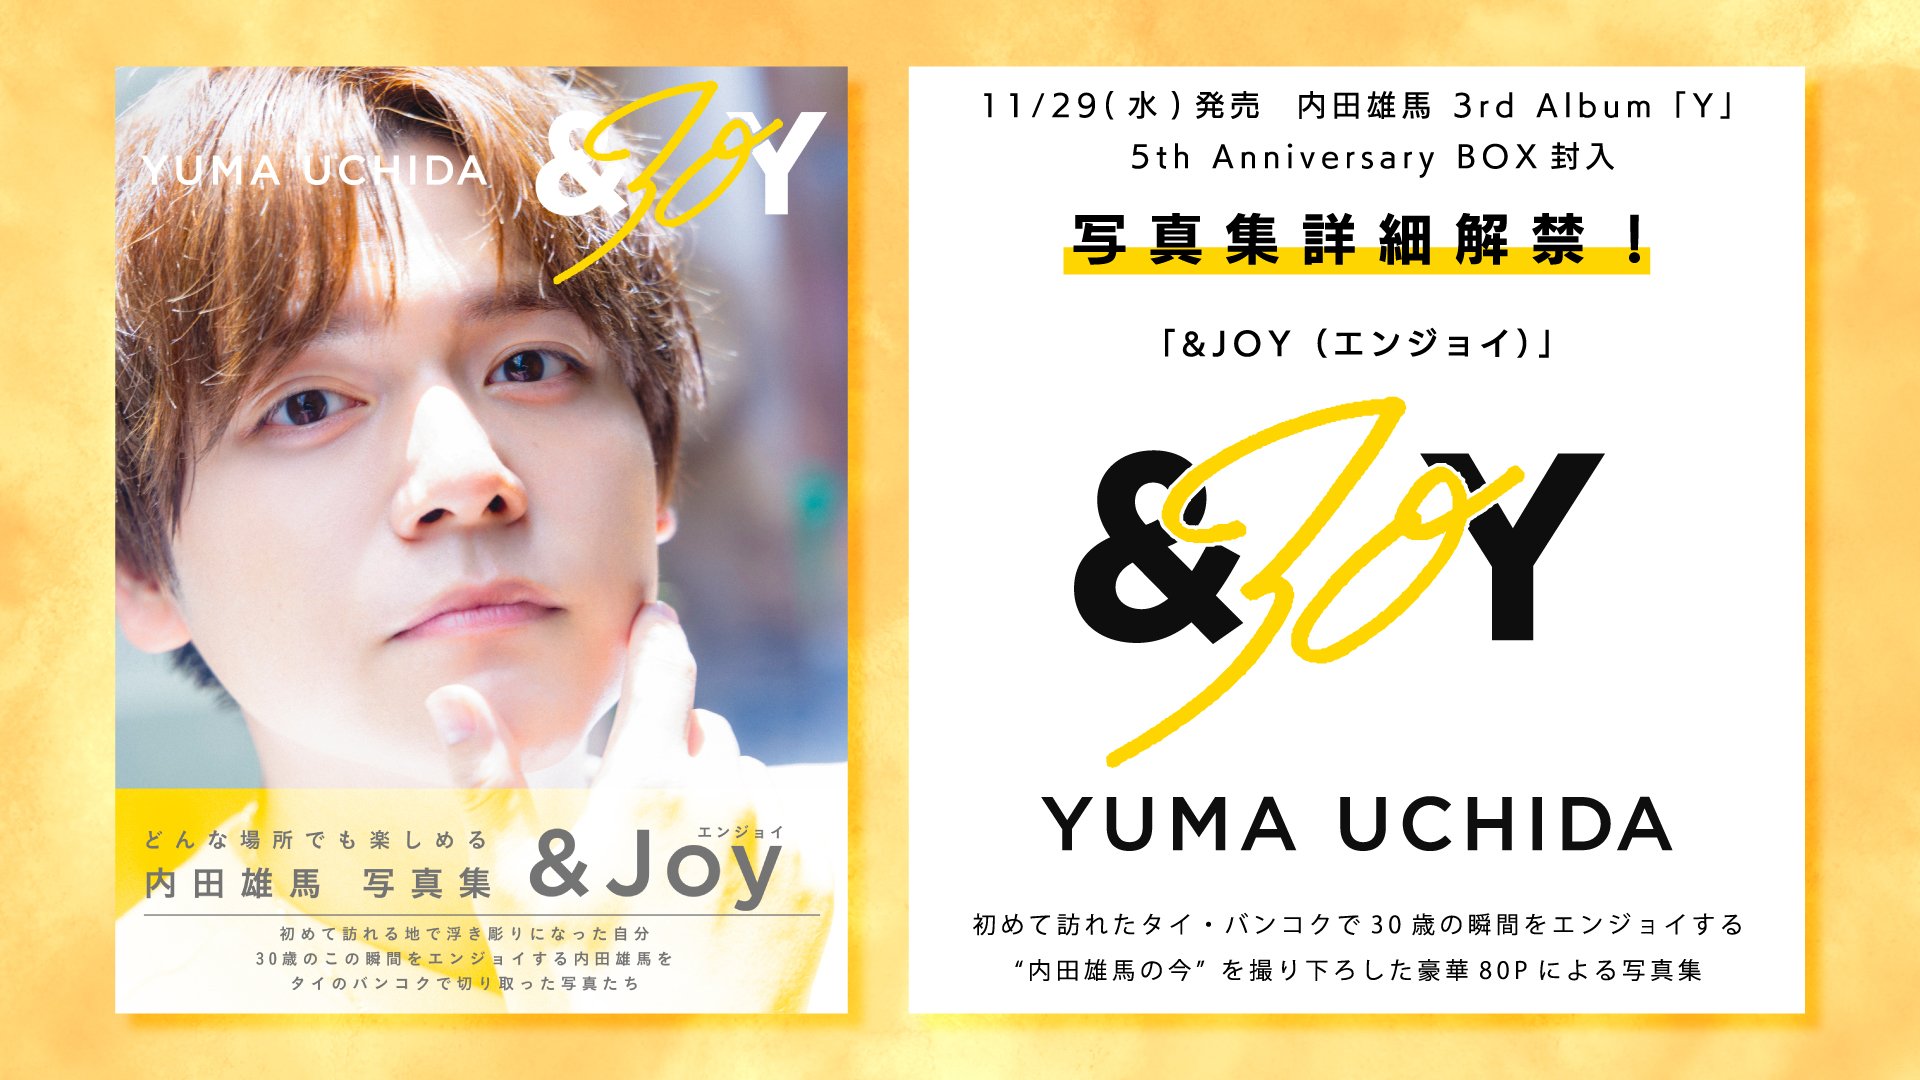 内田雄馬 11/29発売 3rd Album「Y」 5th Anniversary BOX封入 写真集 ...